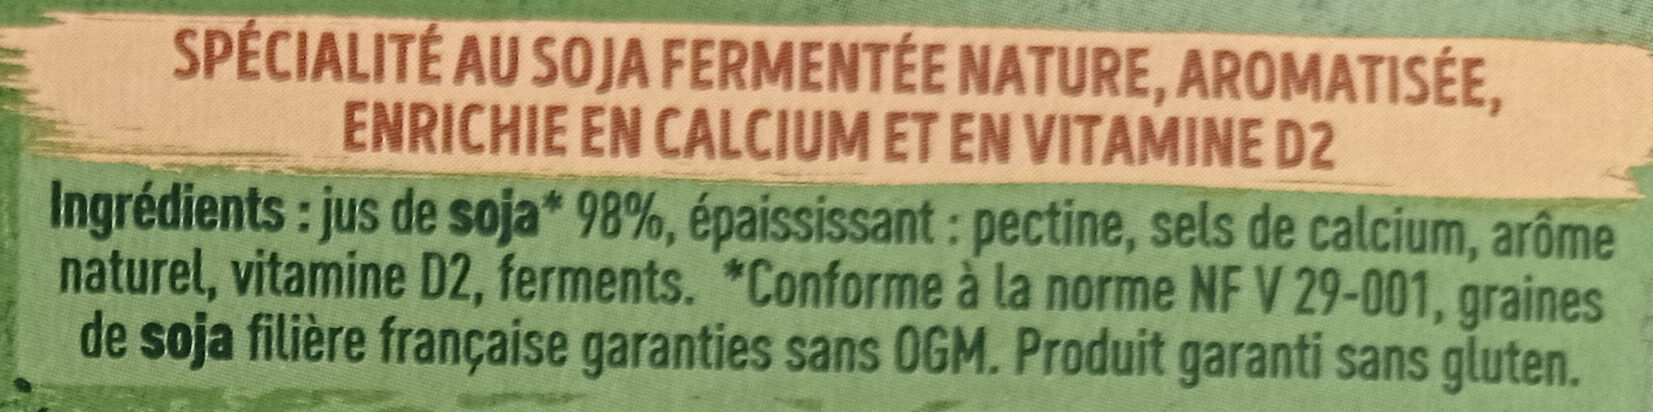 Sojasun nature - Ingredients - fr